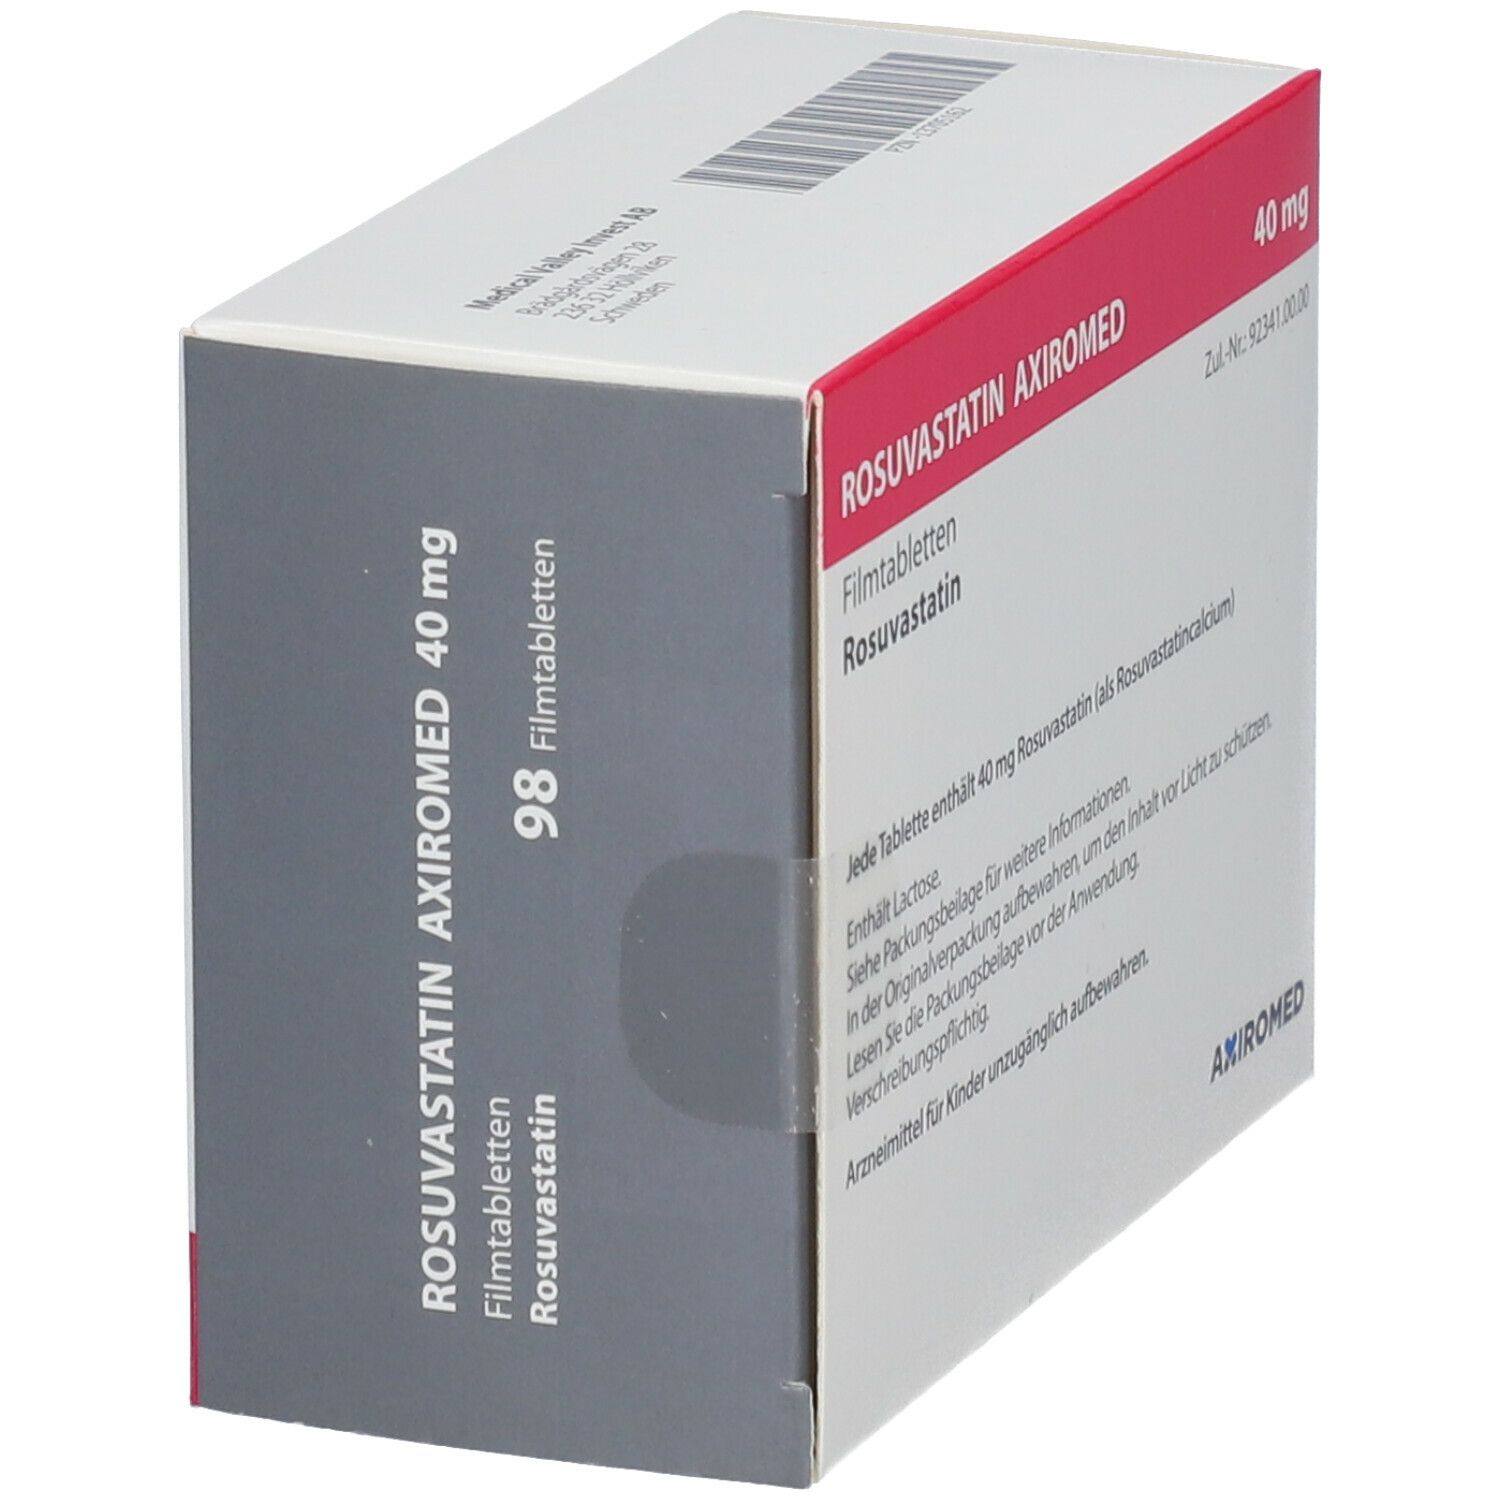 ROSUVASTATIN AXIROMED 40 mg